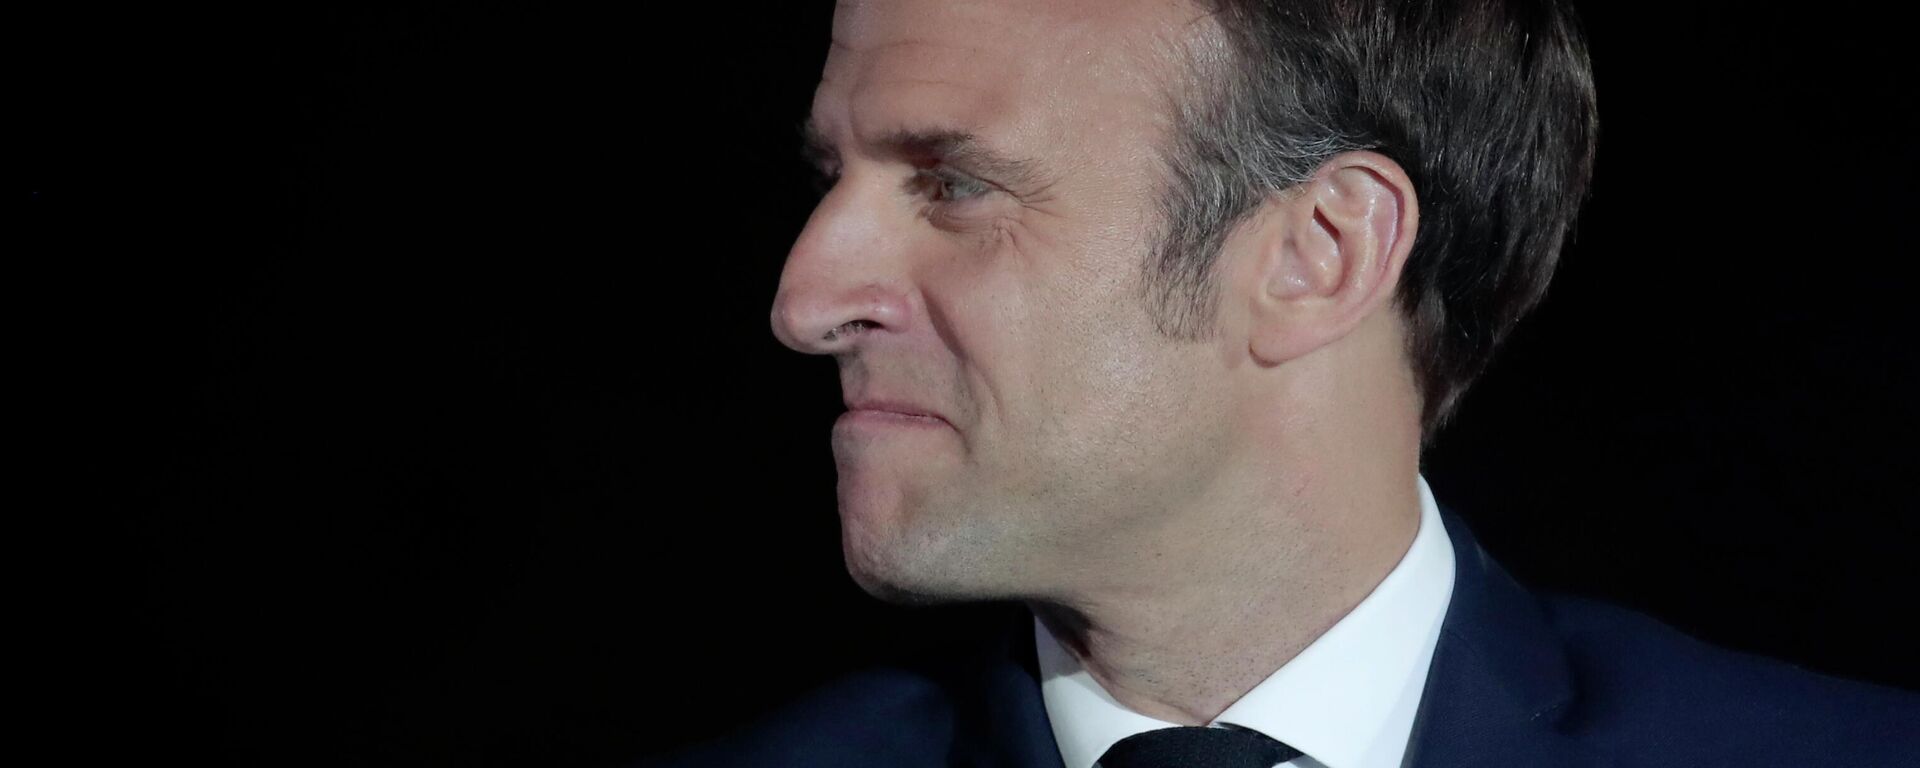 La reelección de Emmanuel Macron como el presidente de Francia - Sputnik Mundo, 1920, 18.11.2022